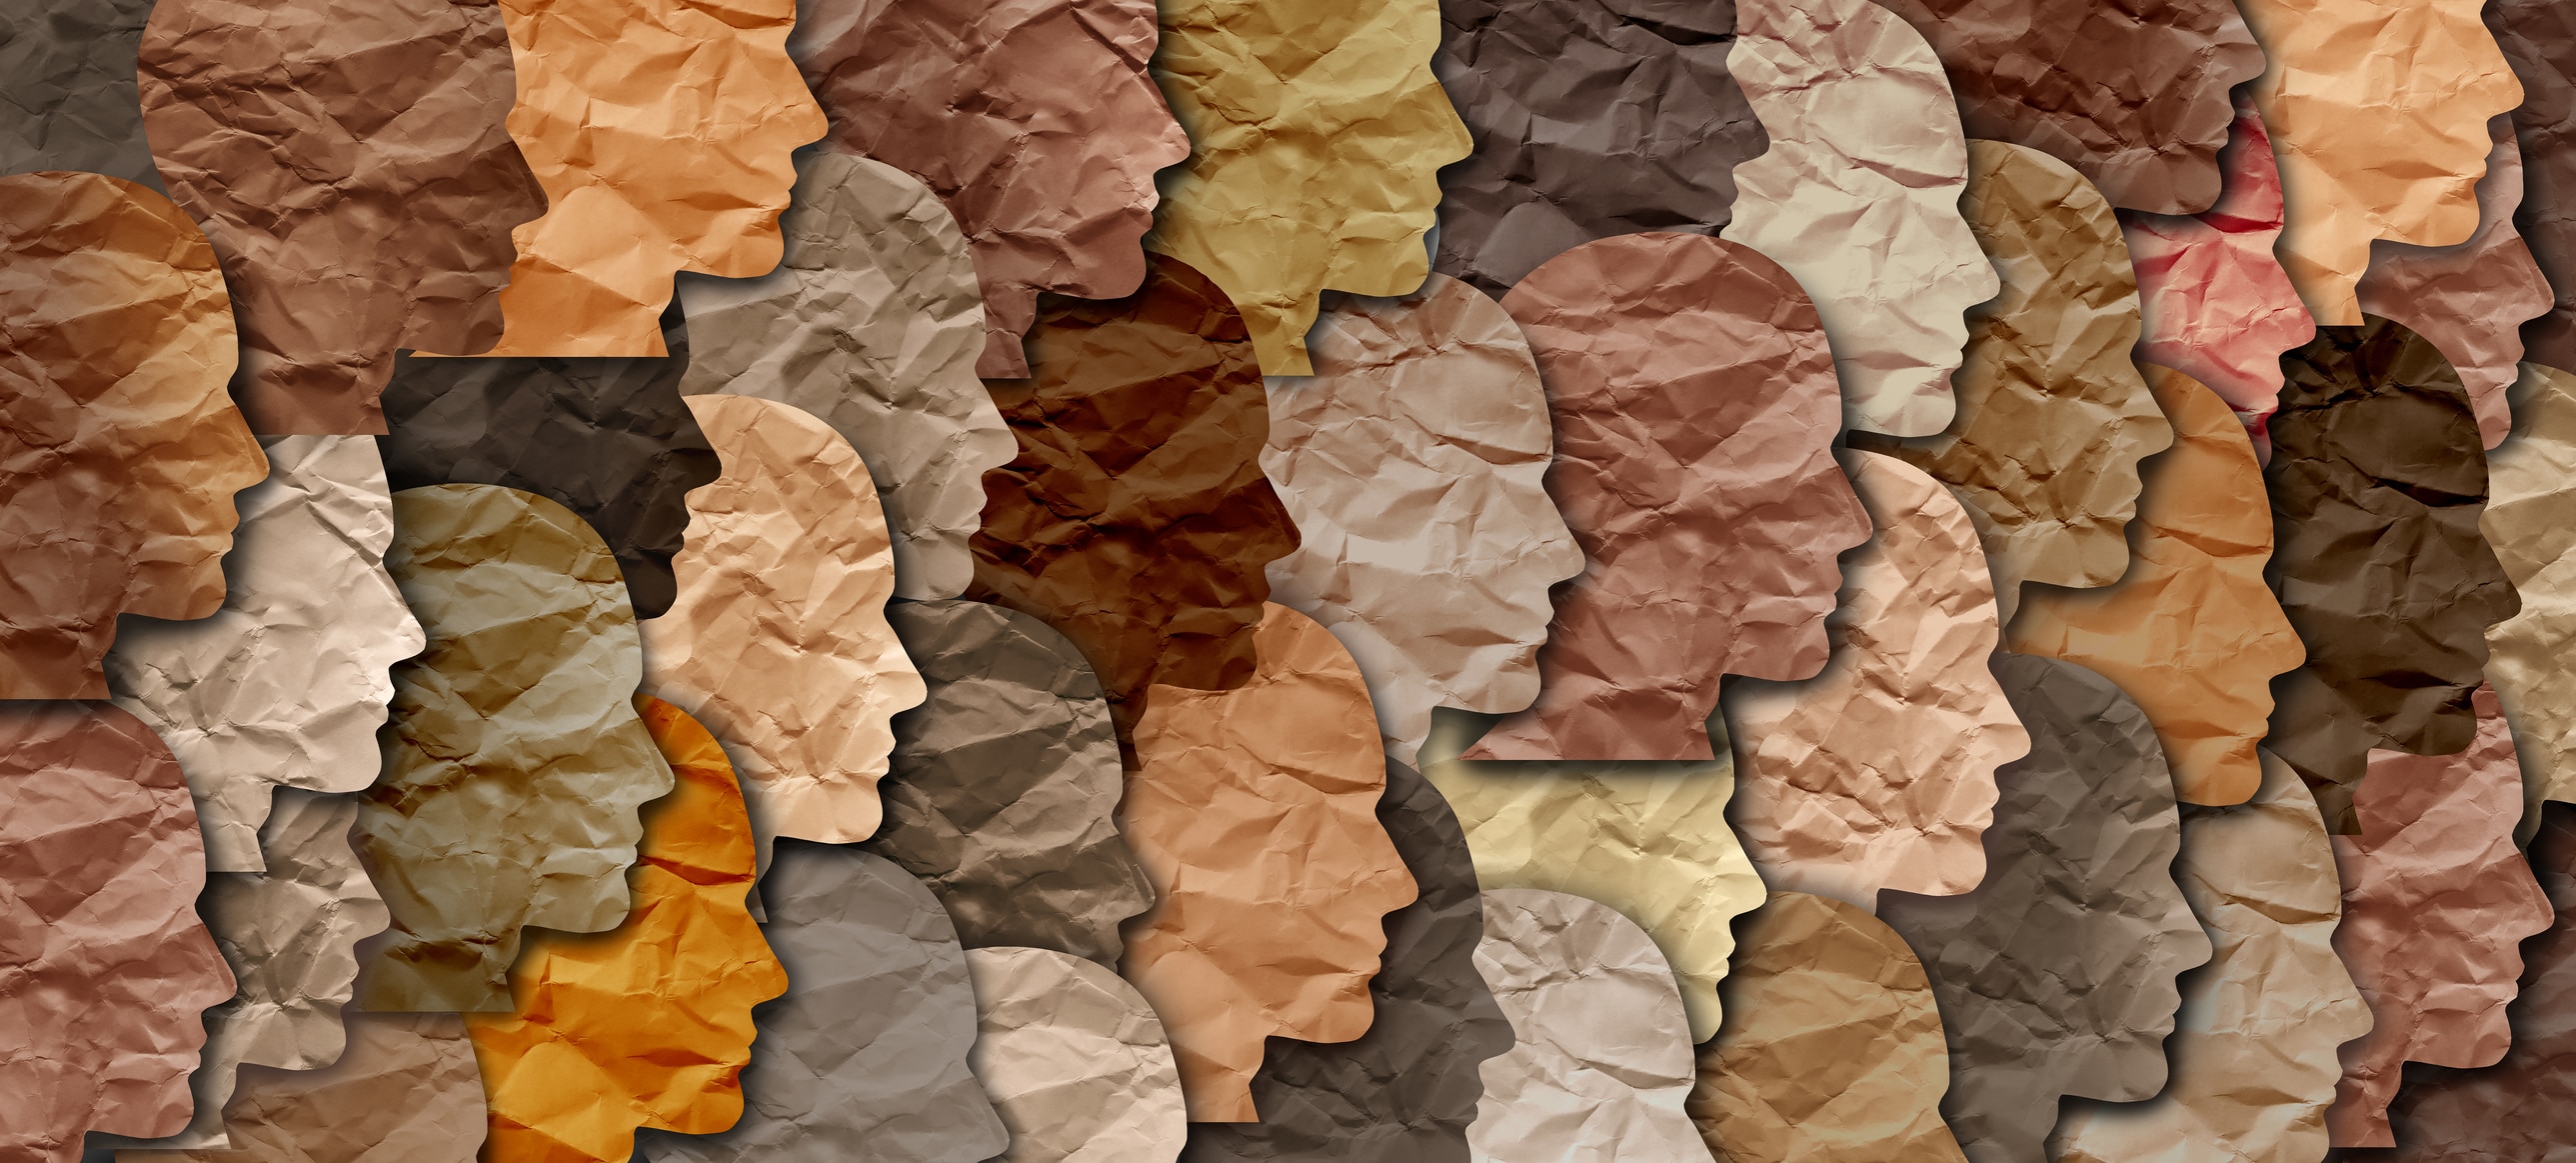 Plusieurs silhouettes en papier, en forme de visage, sont superposées. Elles sont de différentes couleurs, pour représenter la diversité.